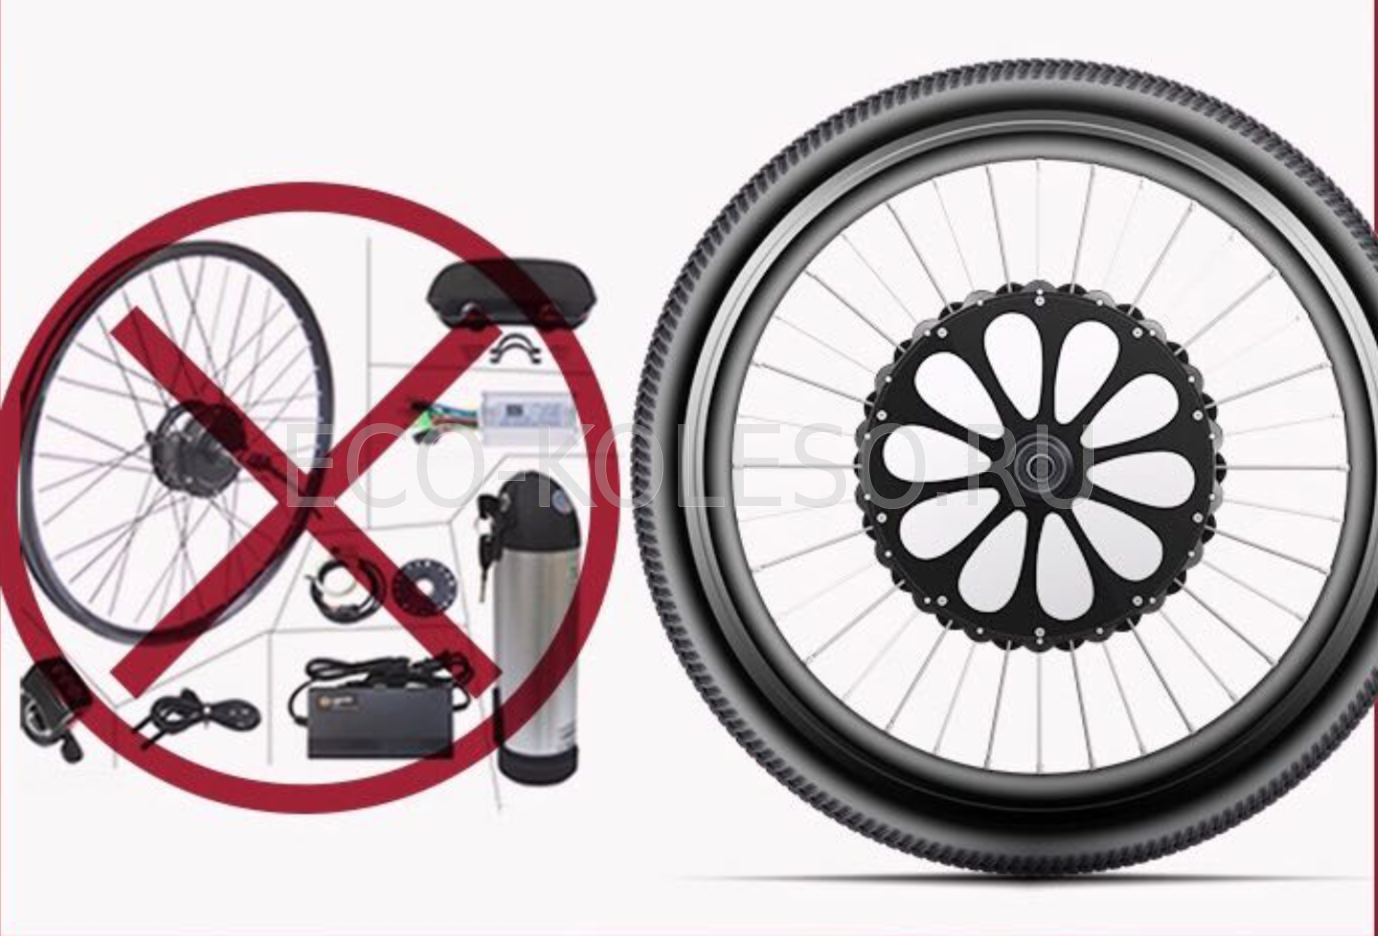 Эко колесо для велосипеда. Smart Eco koleso 350w. Умное электрическое мотор колесо Smart Eco koleso 350w. Smart Eco koleso 350w 26 1.95. Smart Eco koleso 350w 27.5 1.95.